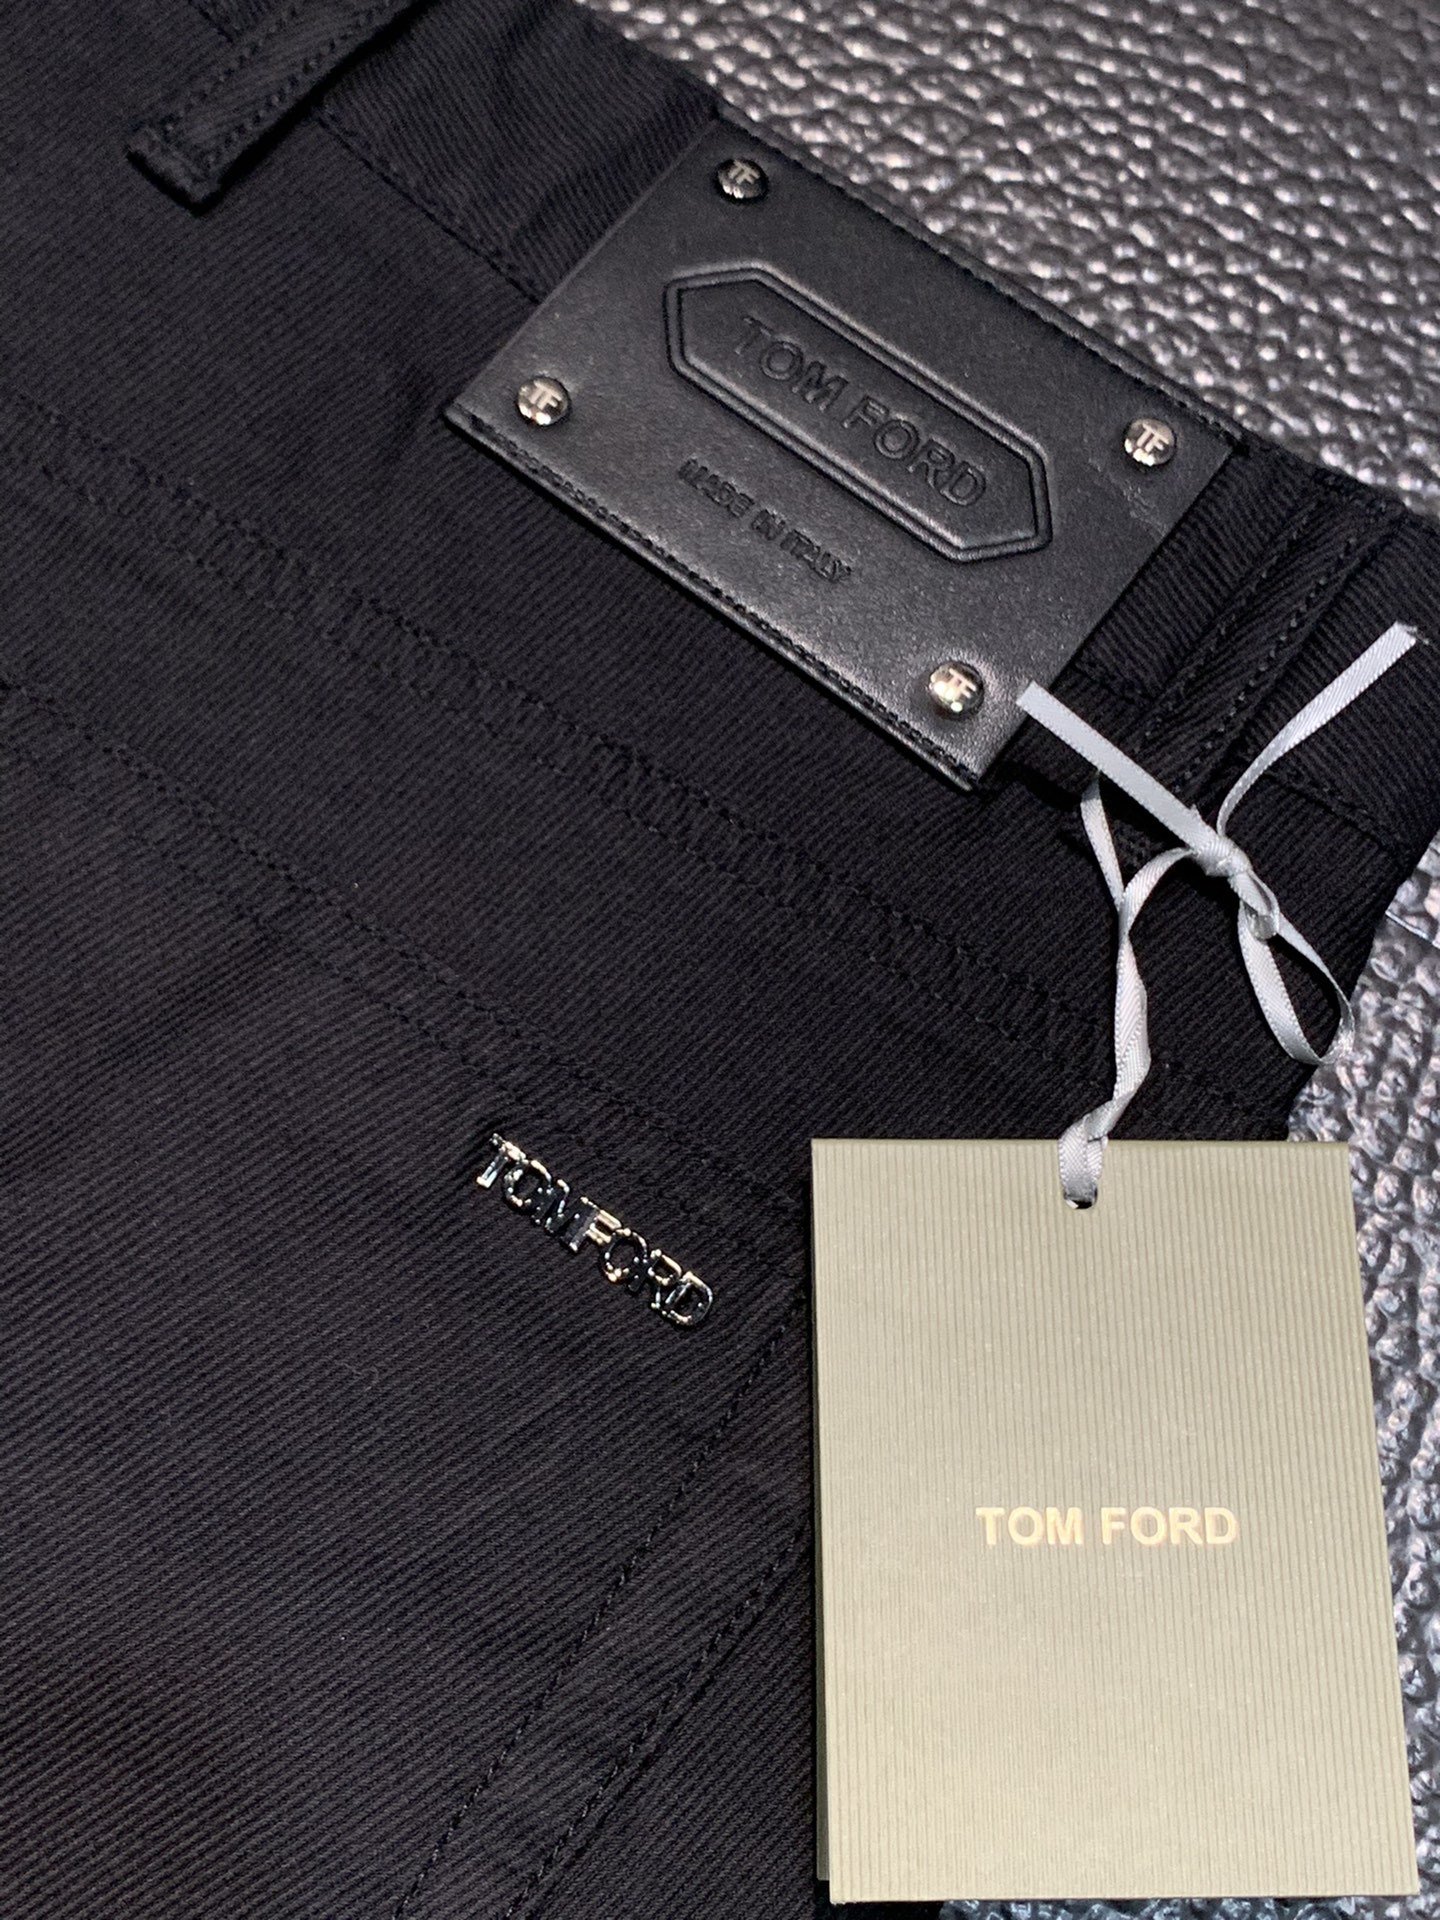 汤姆福特独家专供新款休闲西裤高端版本！专柜定制面料透气舒适度高细节无可挑剔品牌元素设计理念体现高品质手感